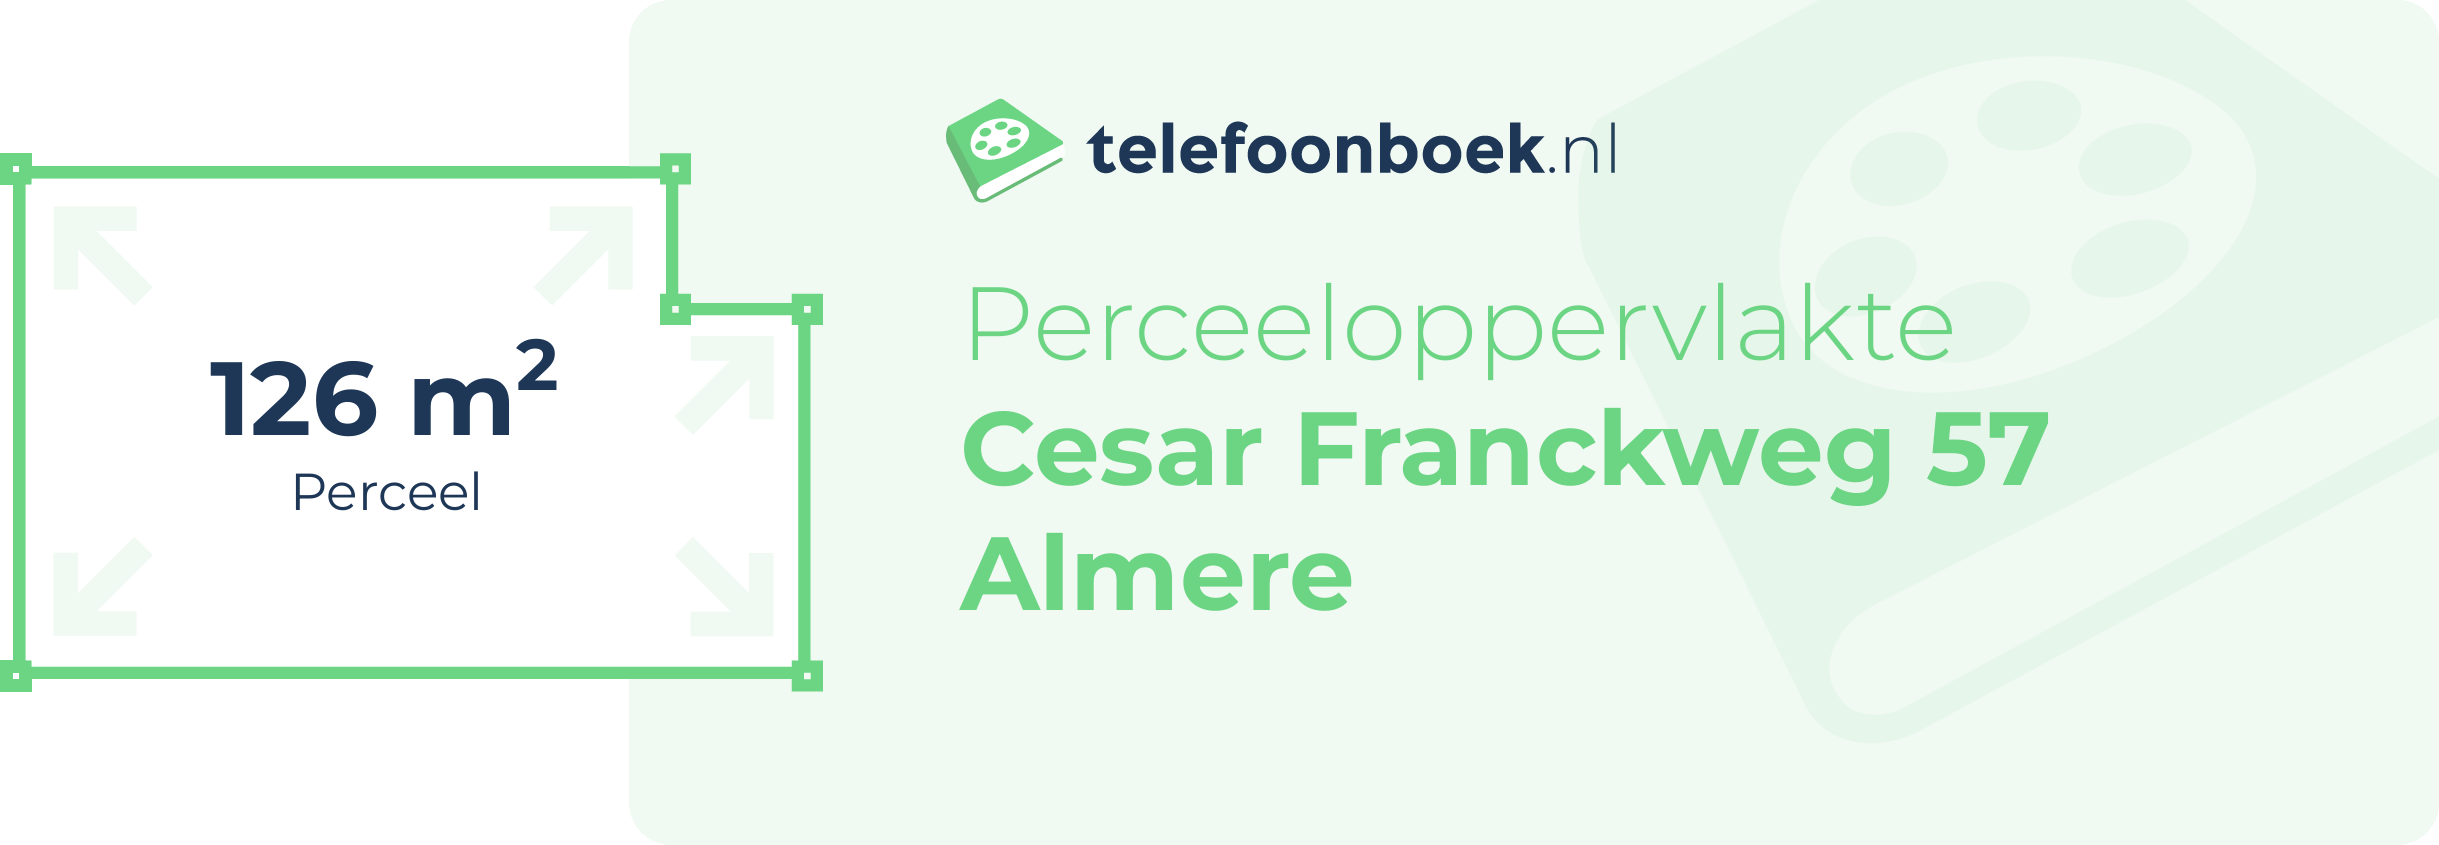 Perceeloppervlakte Cesar Franckweg 57 Almere